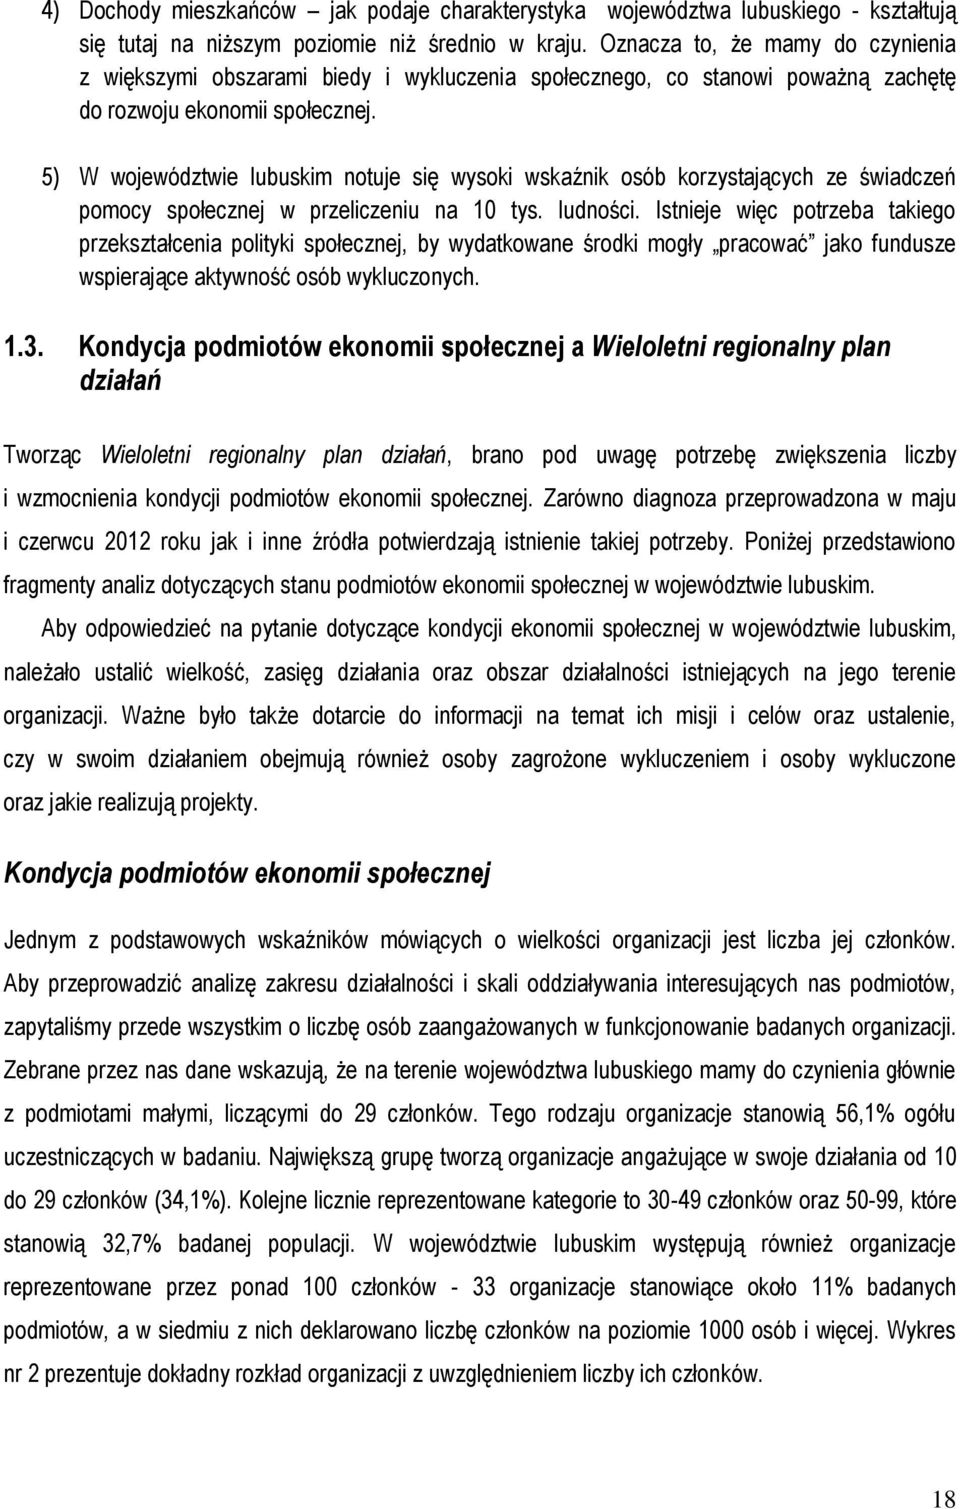 5) W województwie lubuskim notuje się wysoki wskaźnik osób korzystających ze świadczeń pomocy społecznej w przeliczeniu na 10 tys. ludności.